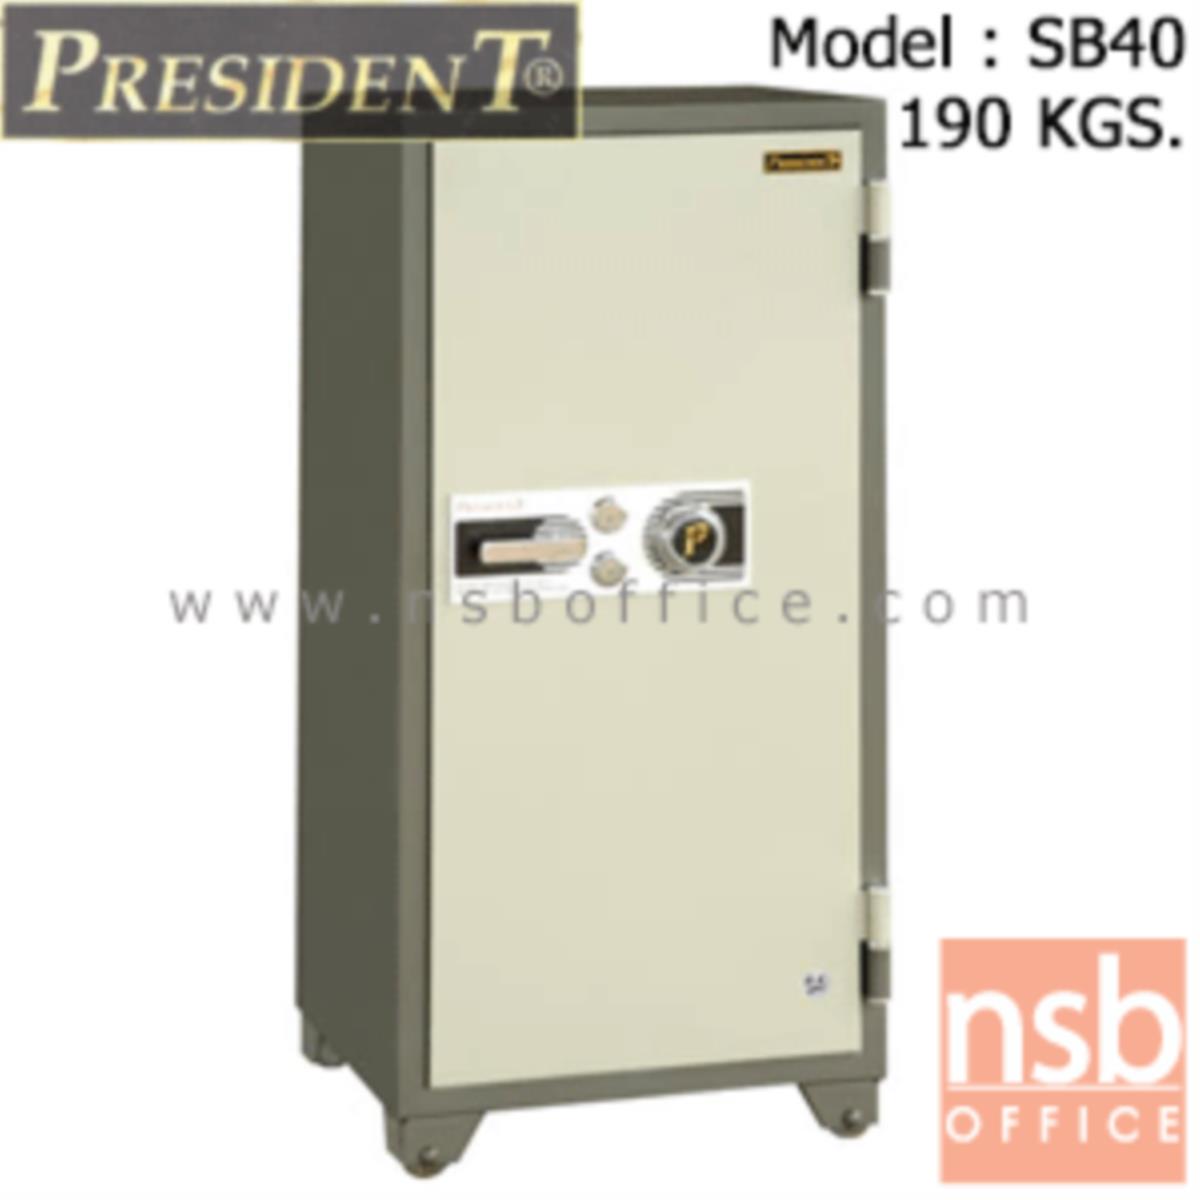 F05A036:ตู้เซฟนิรภัยชนิดหมุน 190 กก. รุ่น PRESIDENT-SB40 มี 2 กุญแจ 1 รหัส (รหัสใช้หมุนหน้าตู้)   